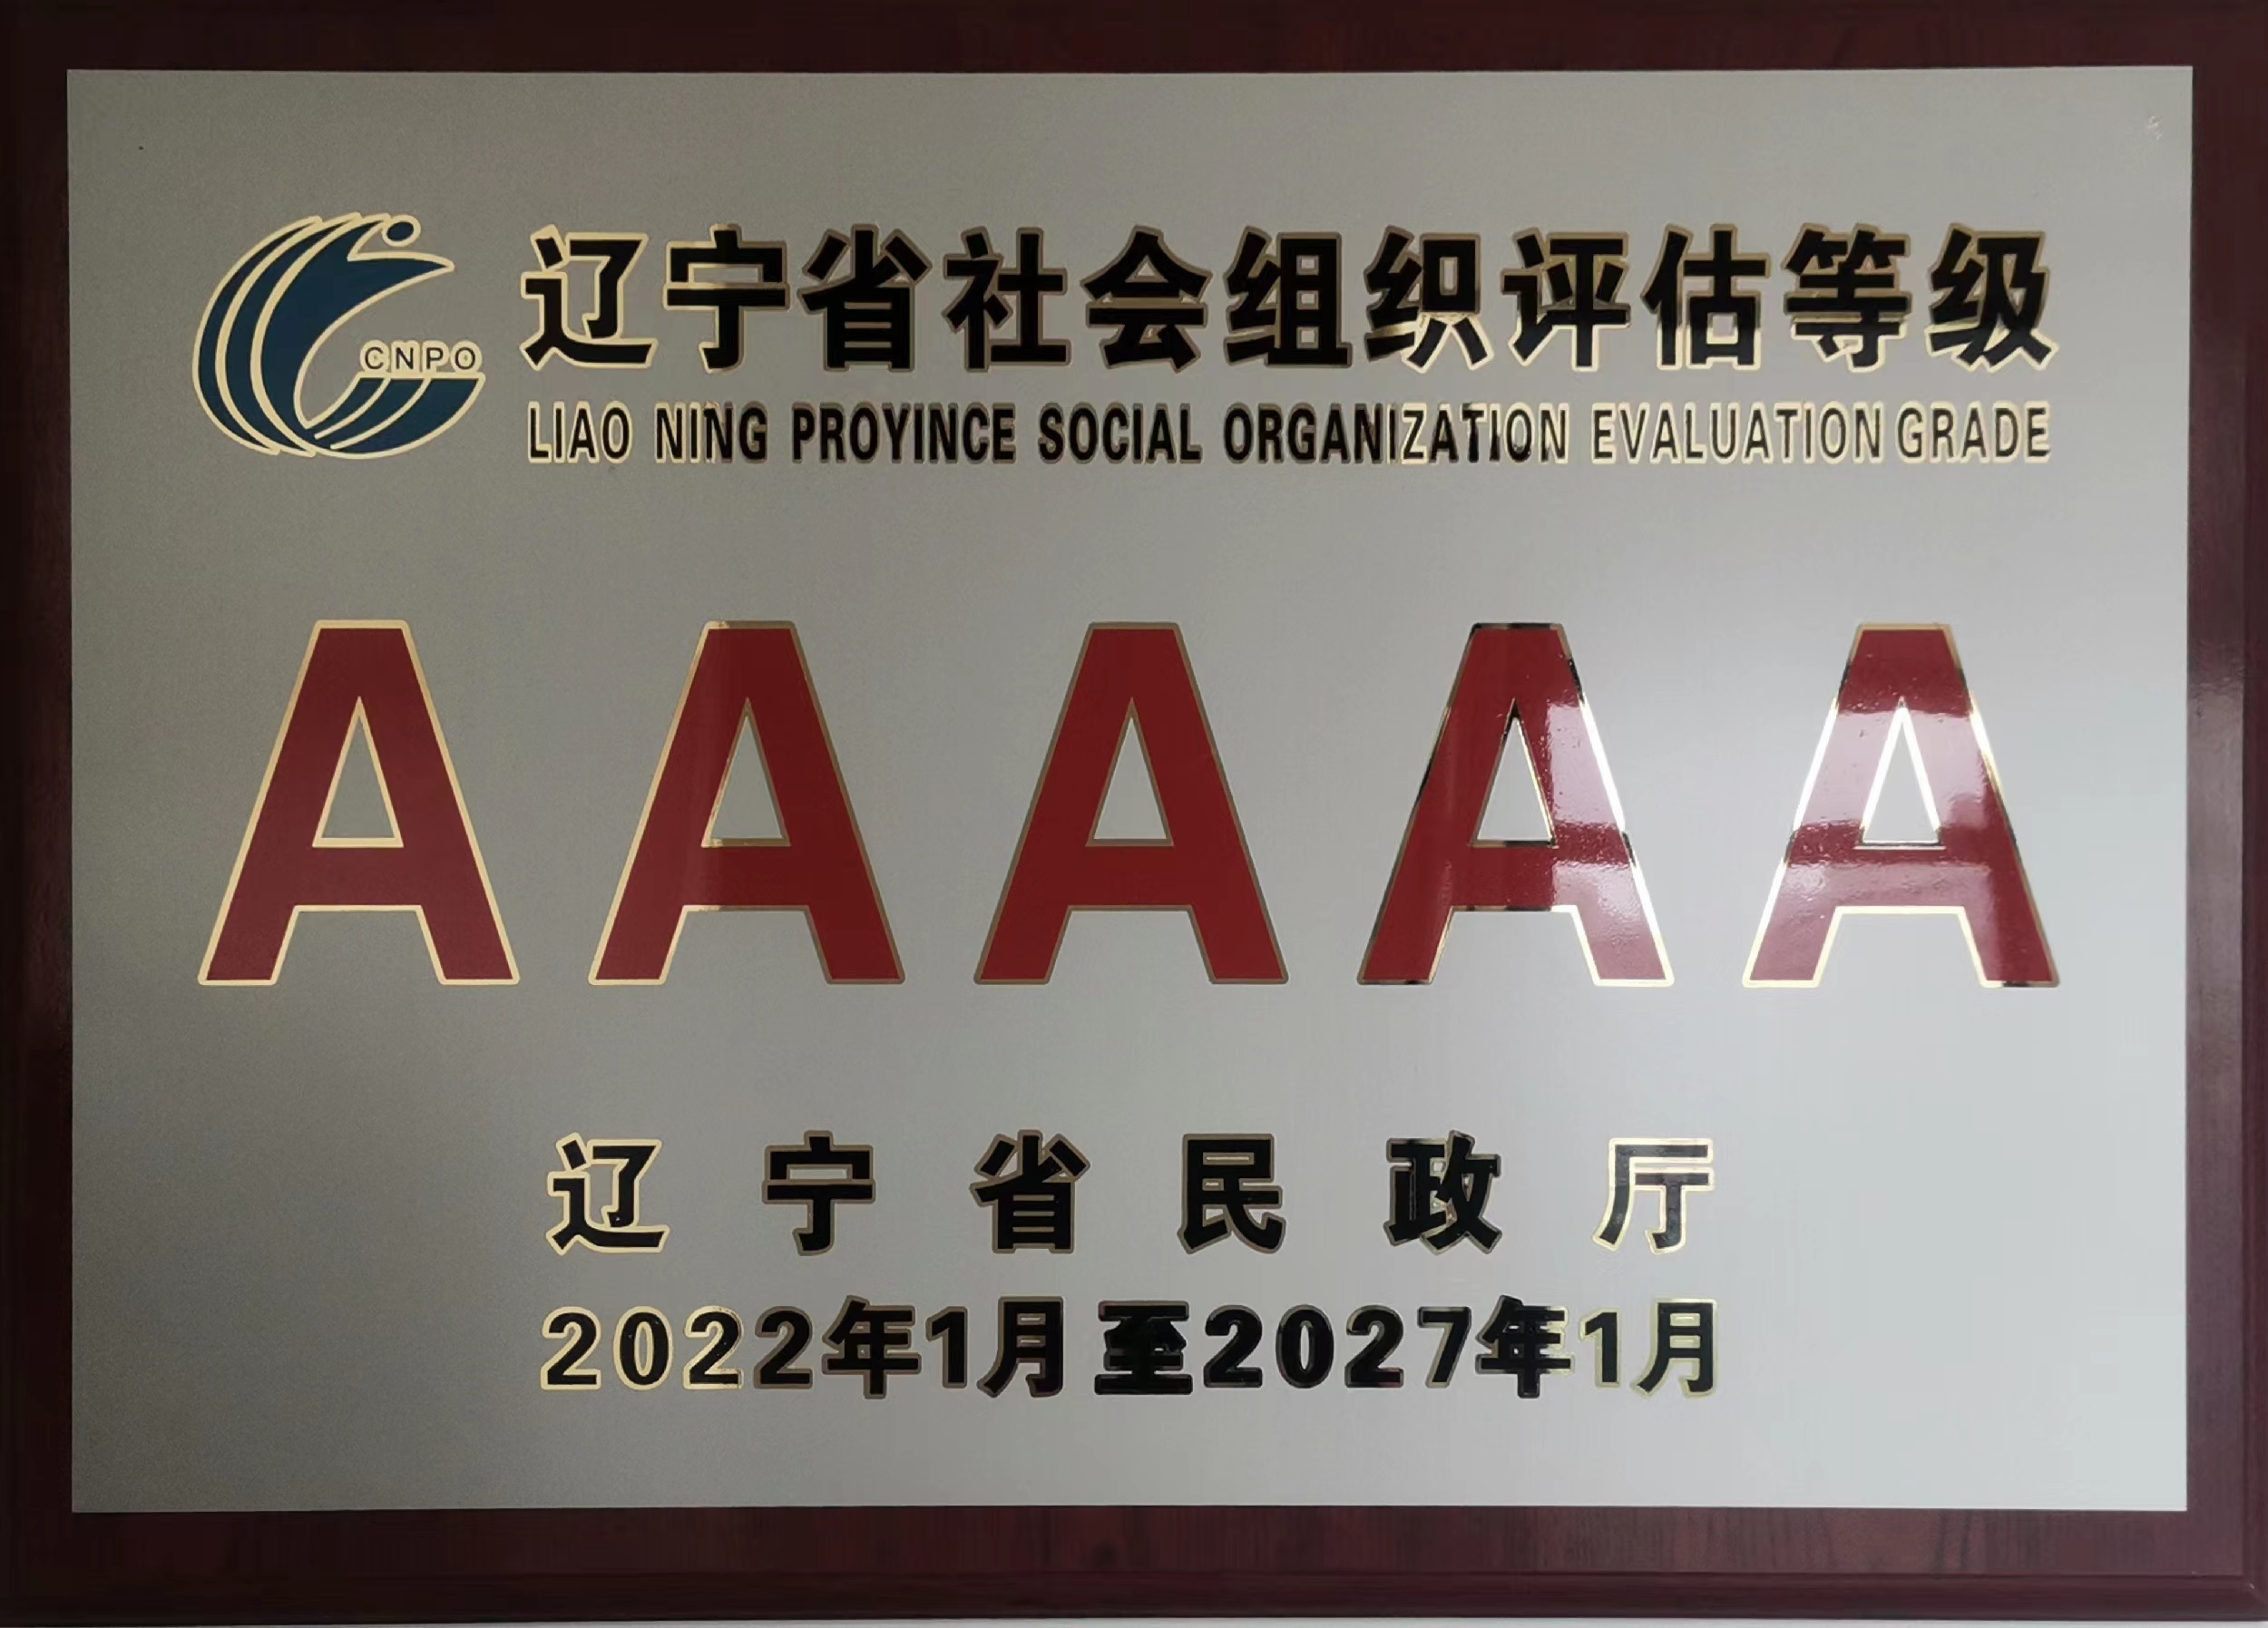 辽宁省道路运输协会被评为5A级社会组织